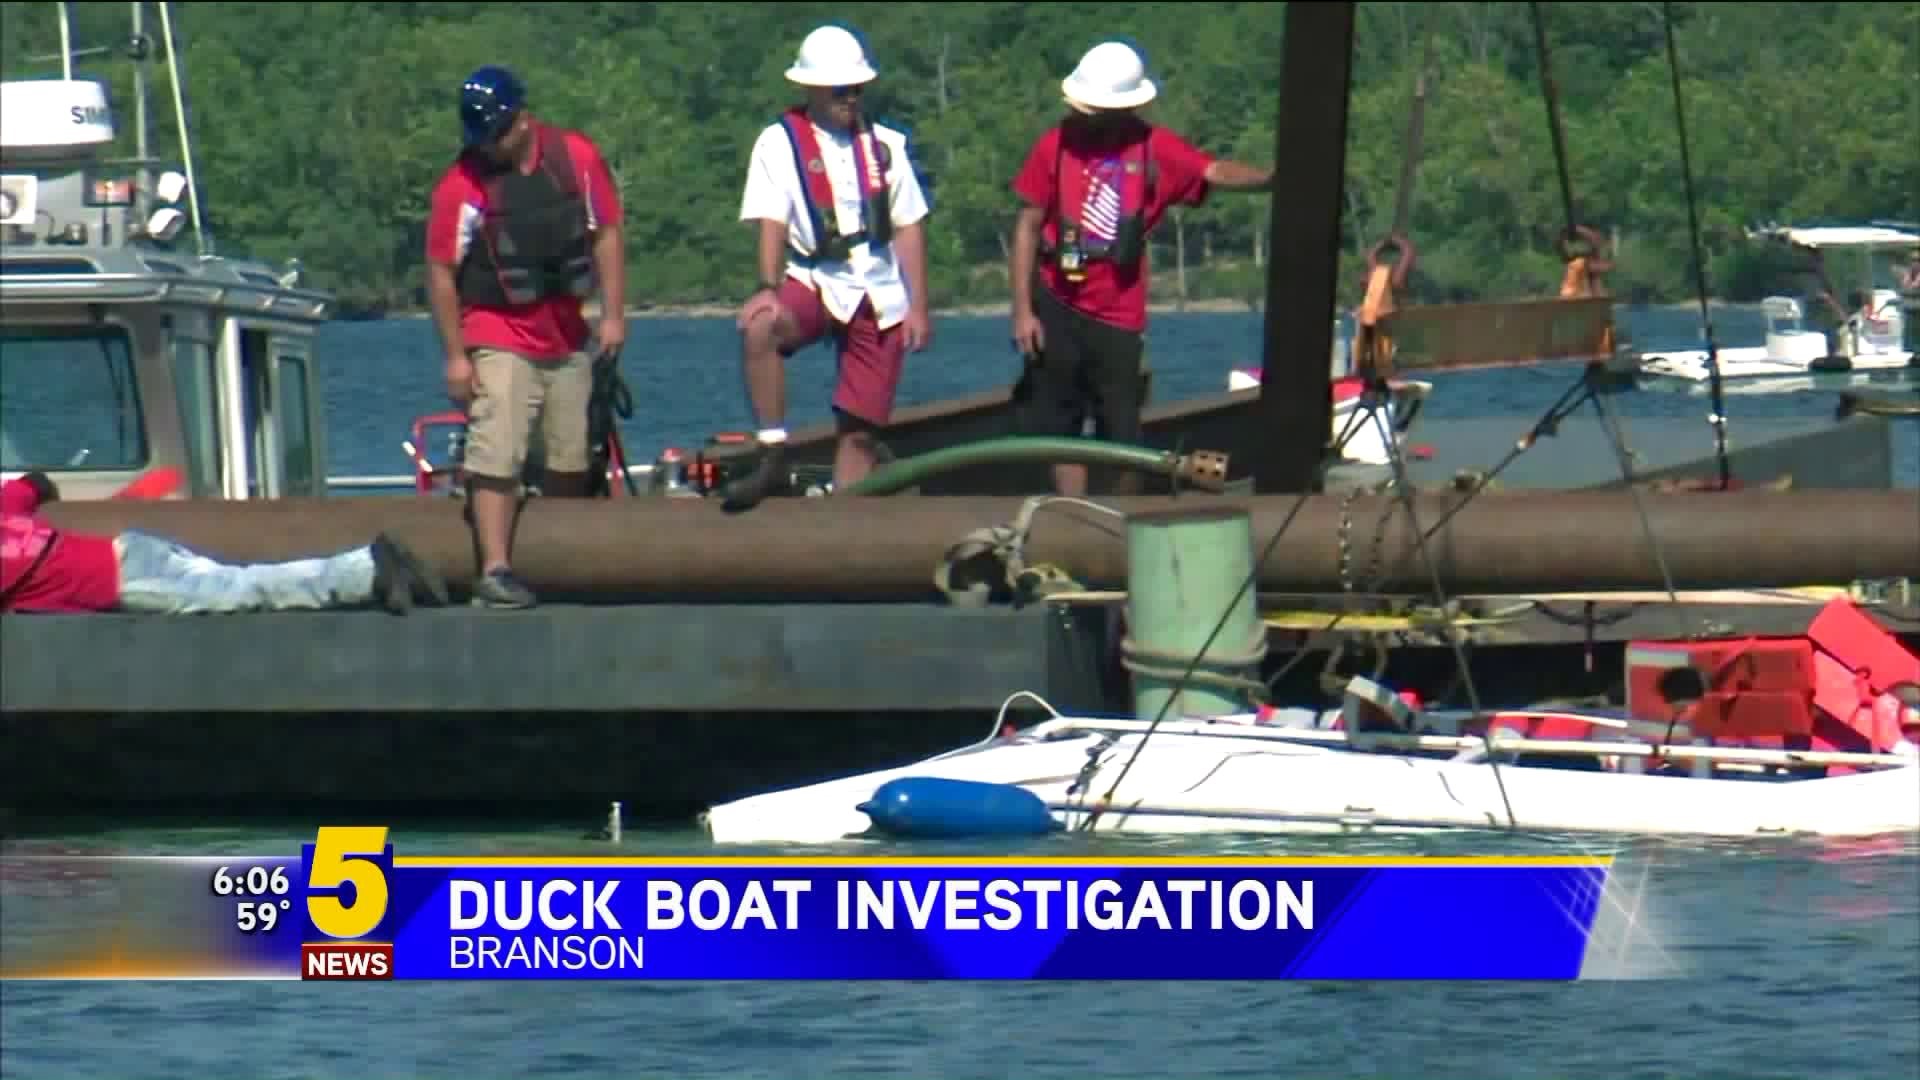 Branson Duck Boat Investigation